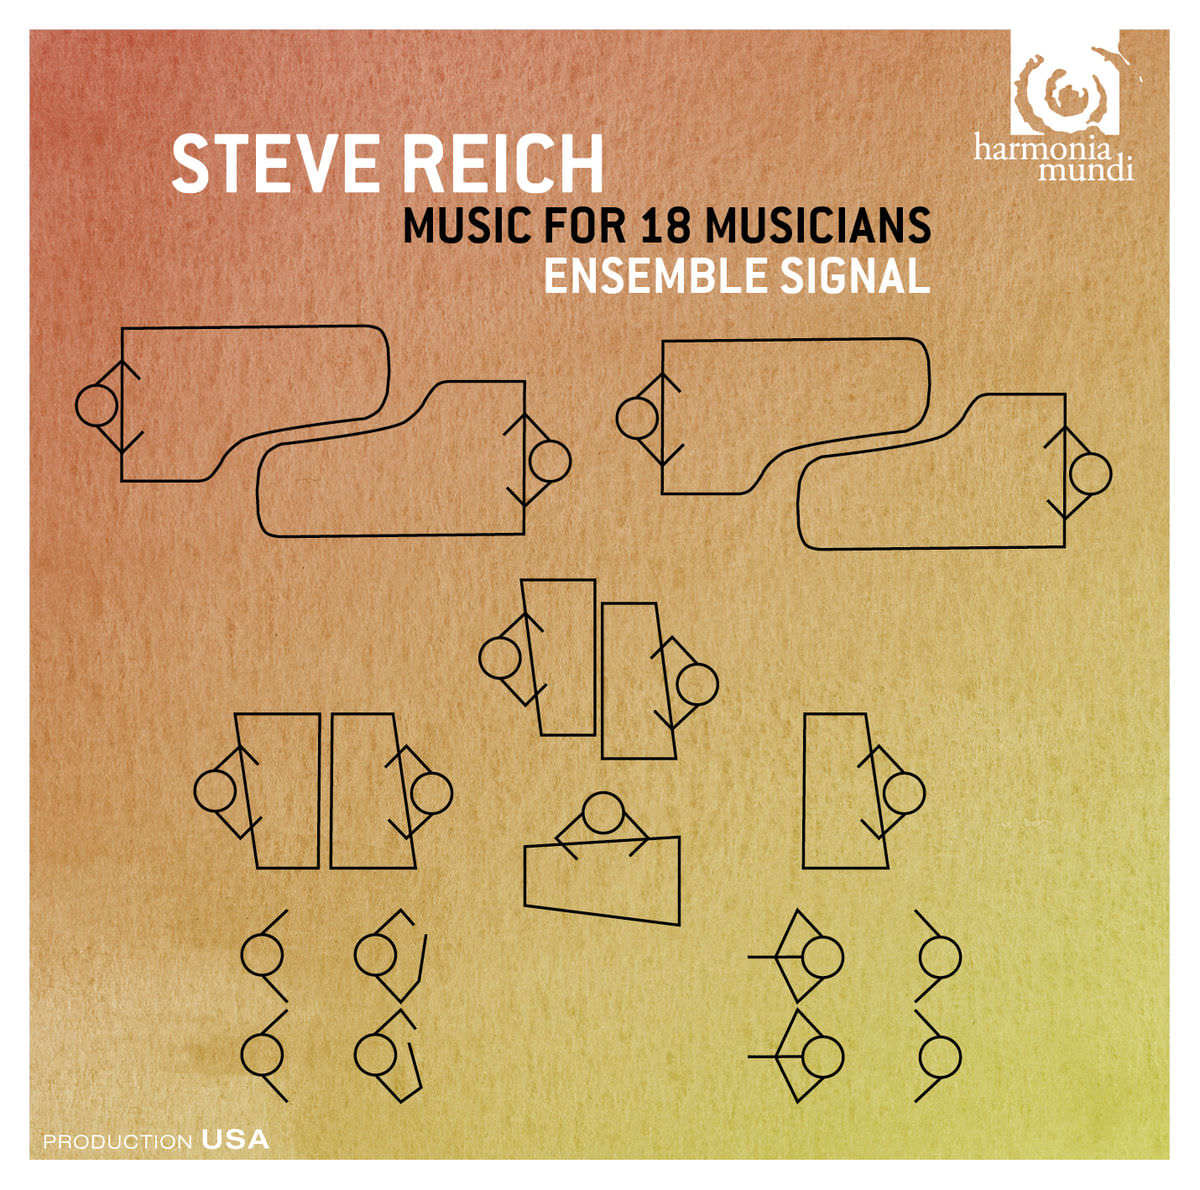 Ensemble Signal - Steve Reich: Music for 18 Musicians (2015) [FLAC 24bit/48kHz]